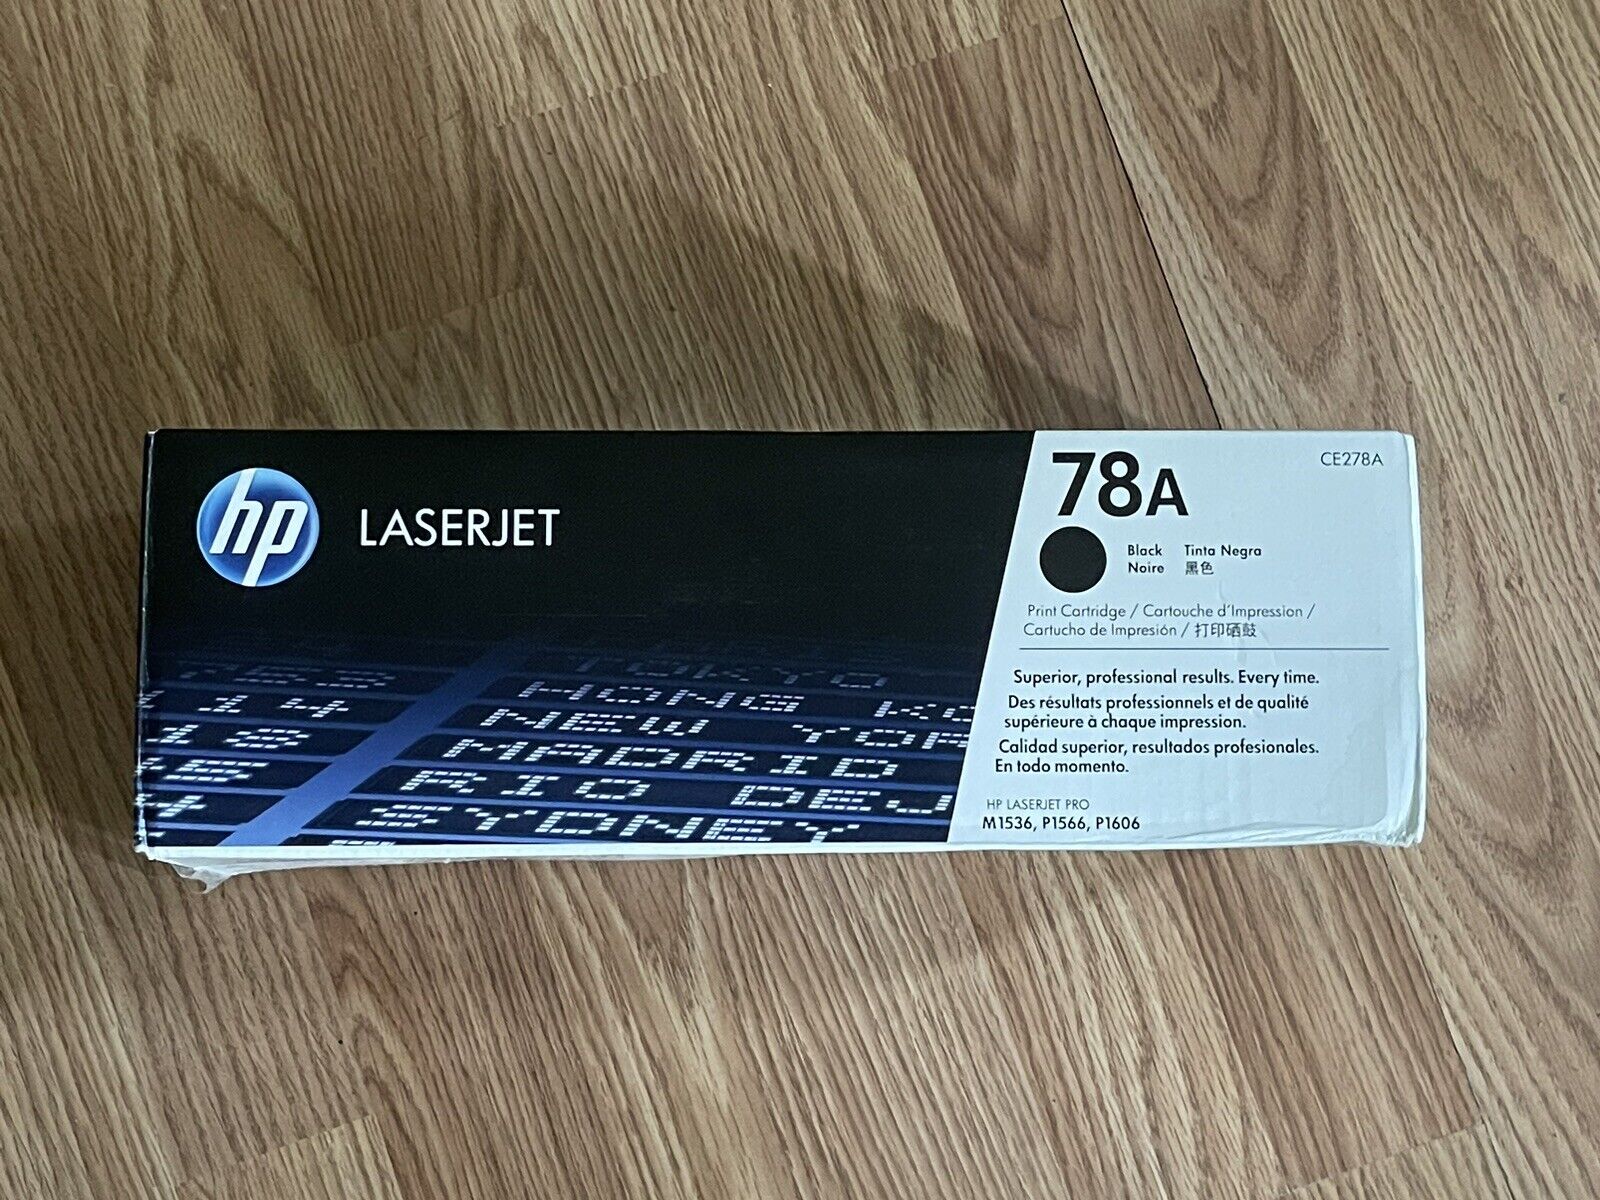 Genuine HP 78A (CE278A) Black Toner For Laserjet Open Box - Sealed Bag